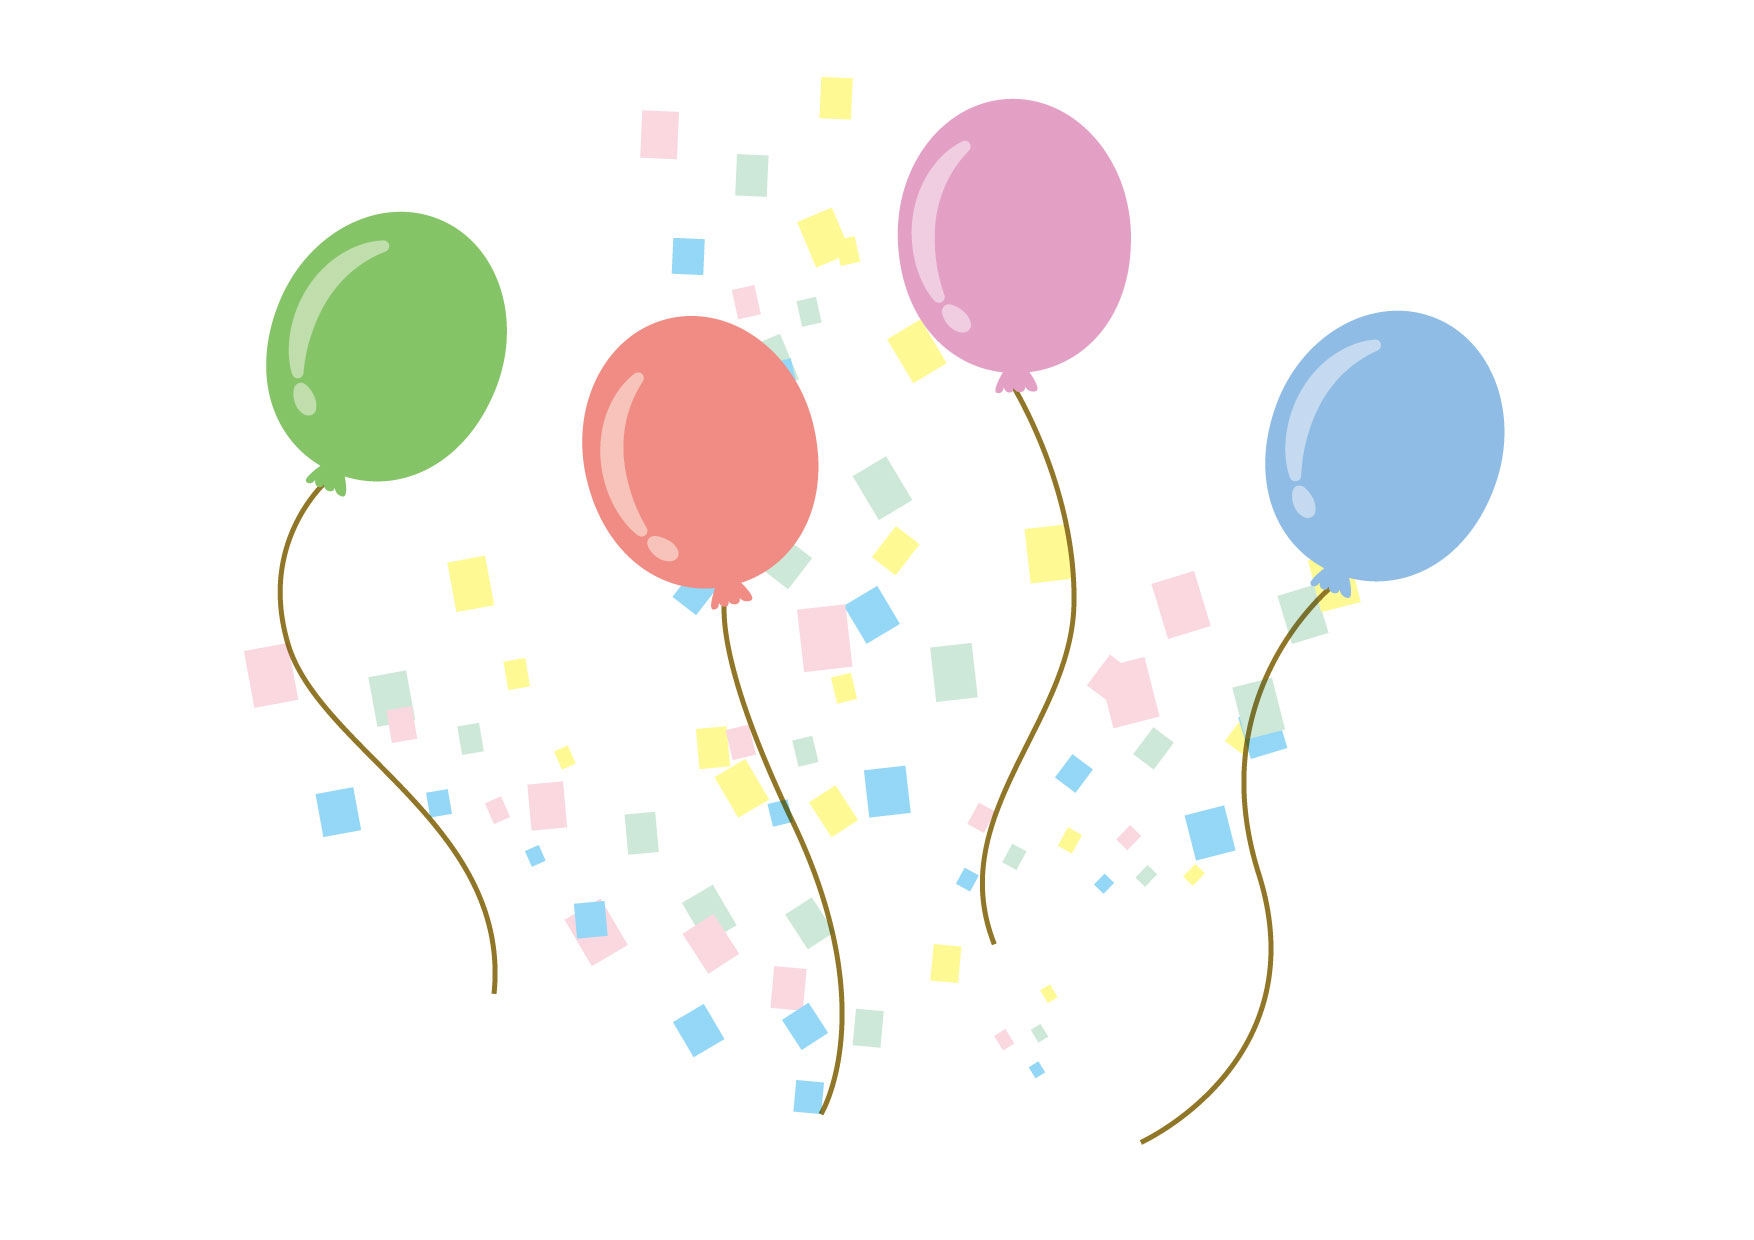 可愛いイラスト無料 風船 紙吹雪 Free Illustration Balloons Confetti 公式 イラストダウンロード